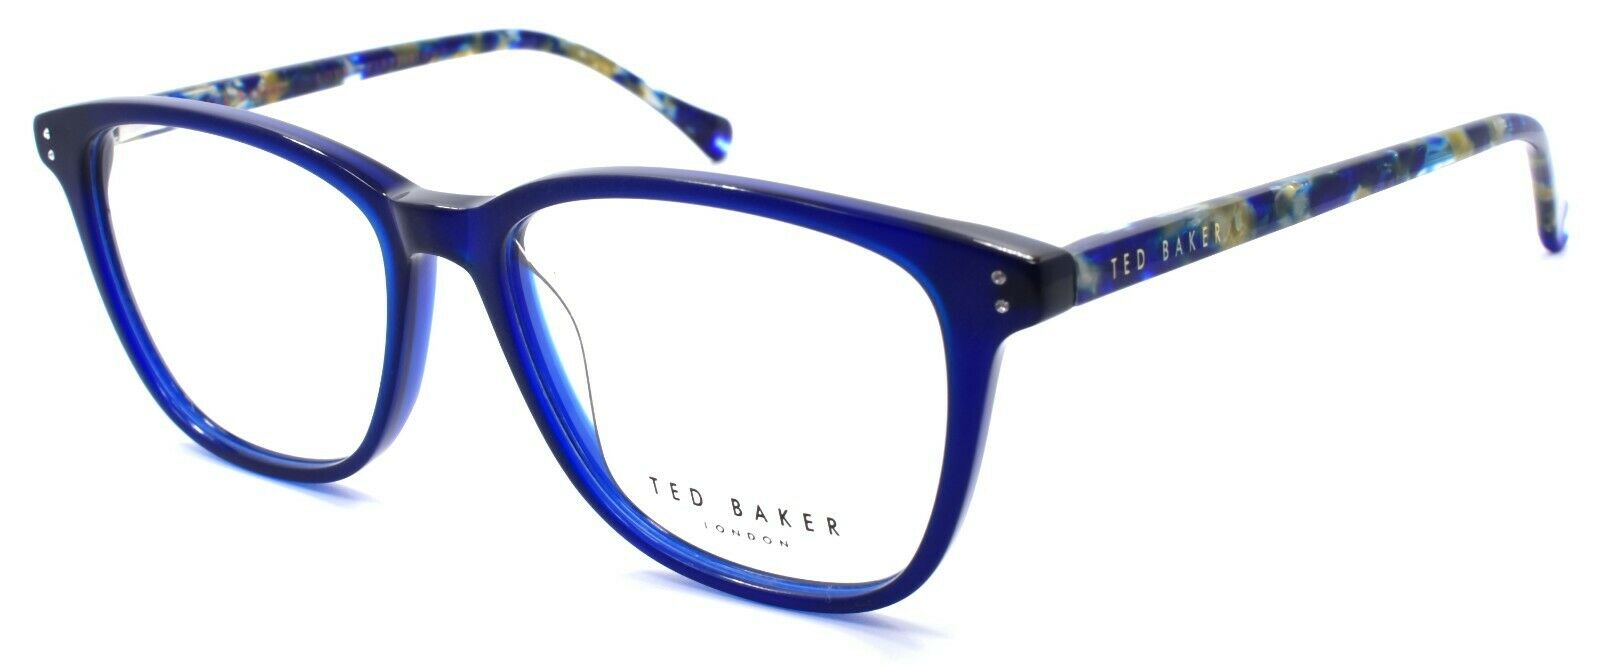 1-Ted Baker Maple 9131 608 Women's Eyeglasses Frames 51-15-140 Navy Blue-4894327181407-IKSpecs